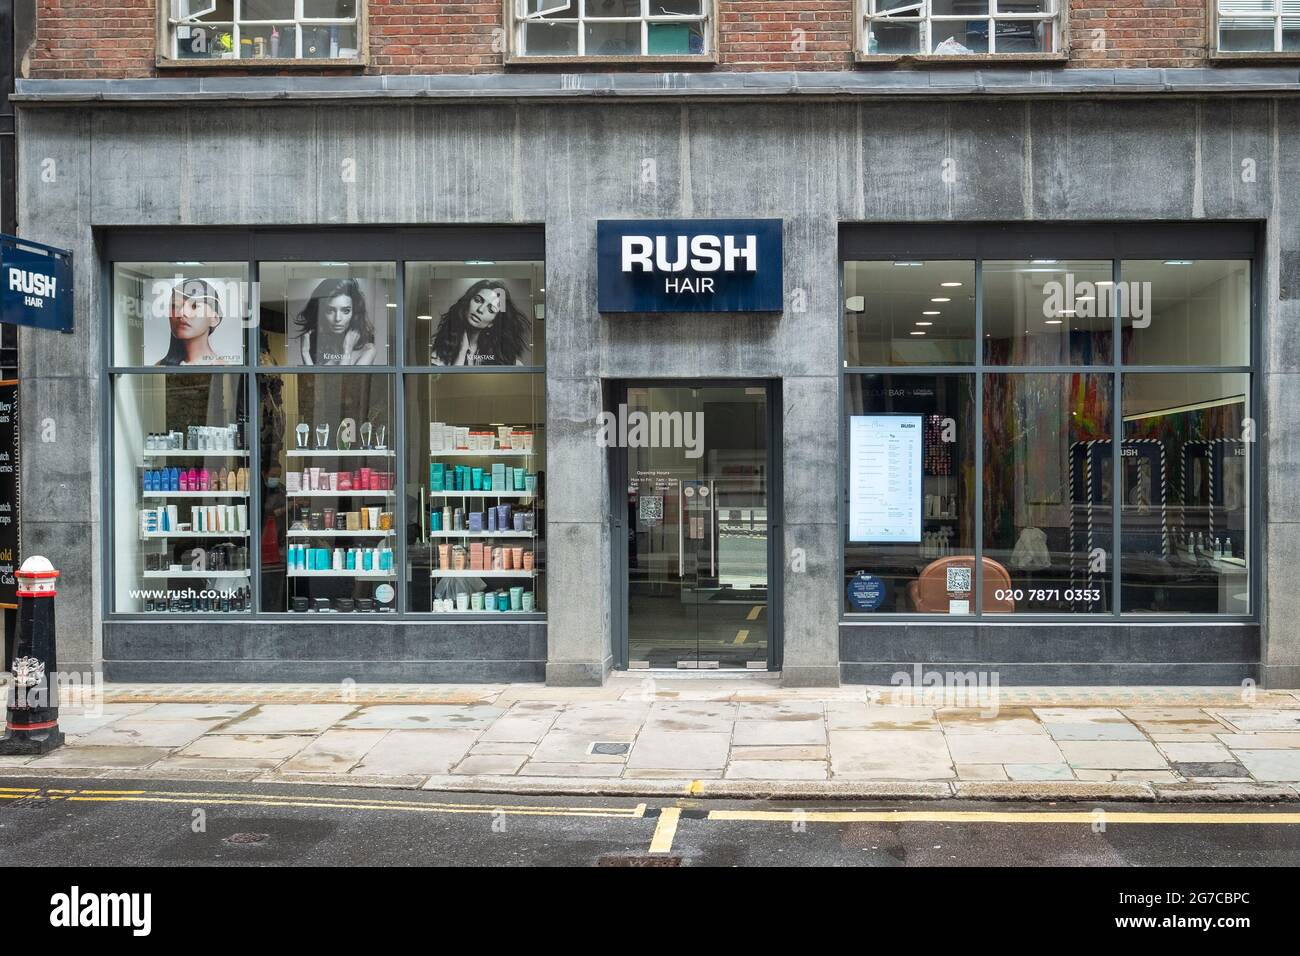 Londres- juillet, 2021: Rush salon de coiffure, une chaîne de coiffeurs britanniques de la haute rue. Succursale dans le centre de Londres Banque D'Images